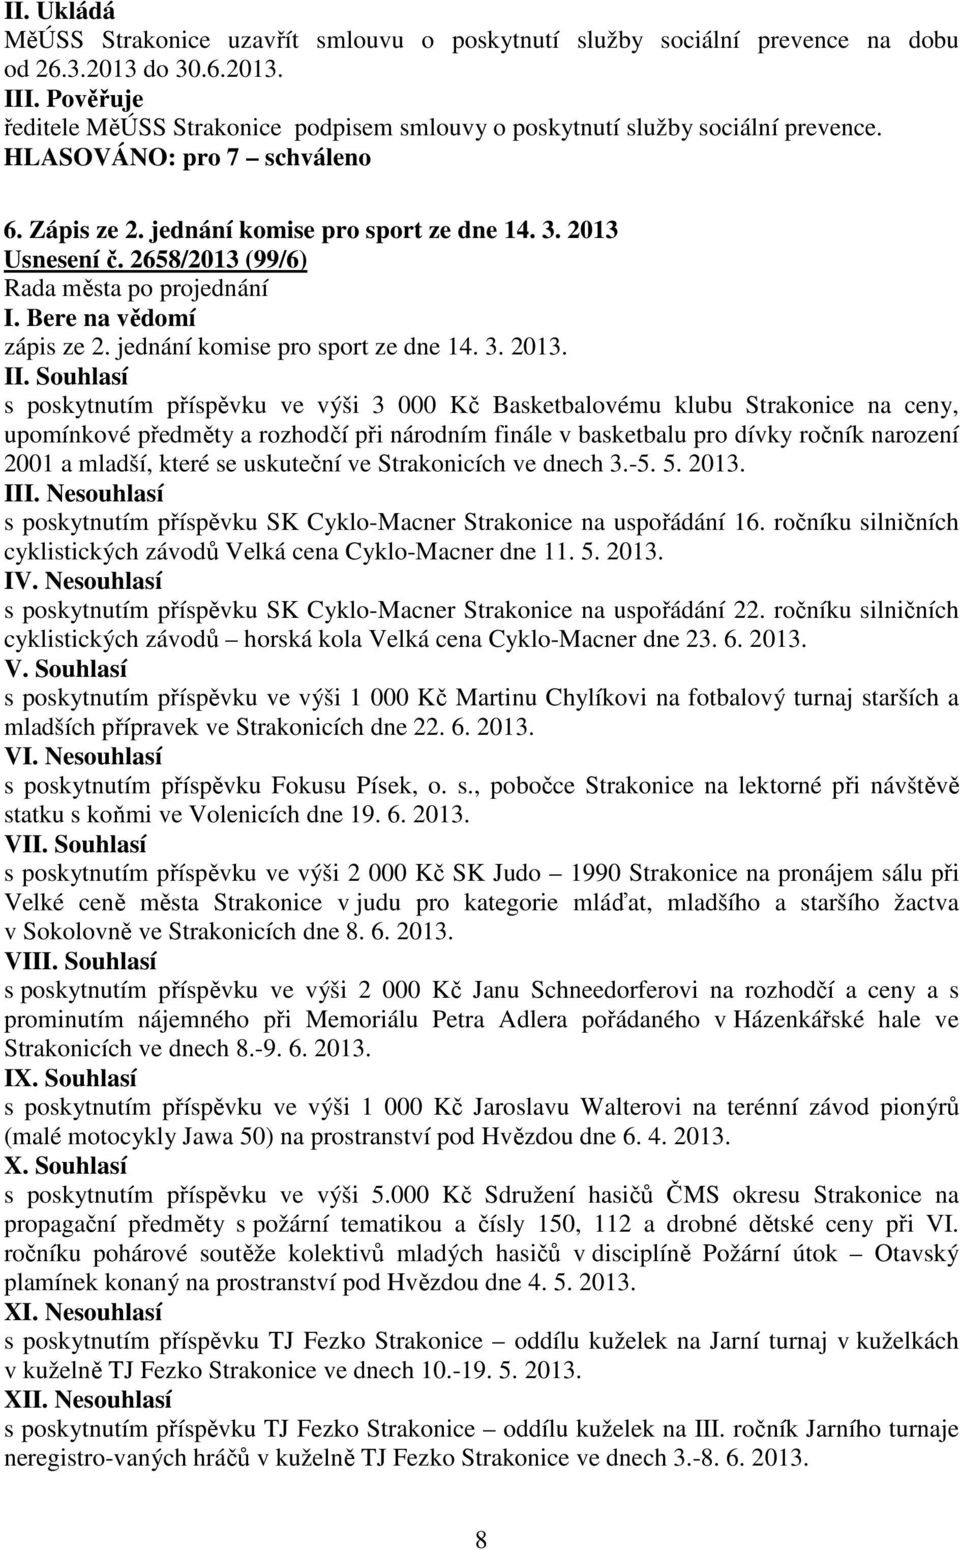 Usnesení č. 2658/2013 (99/6) I. Bere na vědomí zápis ze 2. jednání komise pro sport ze dne 14. 3. 2013.